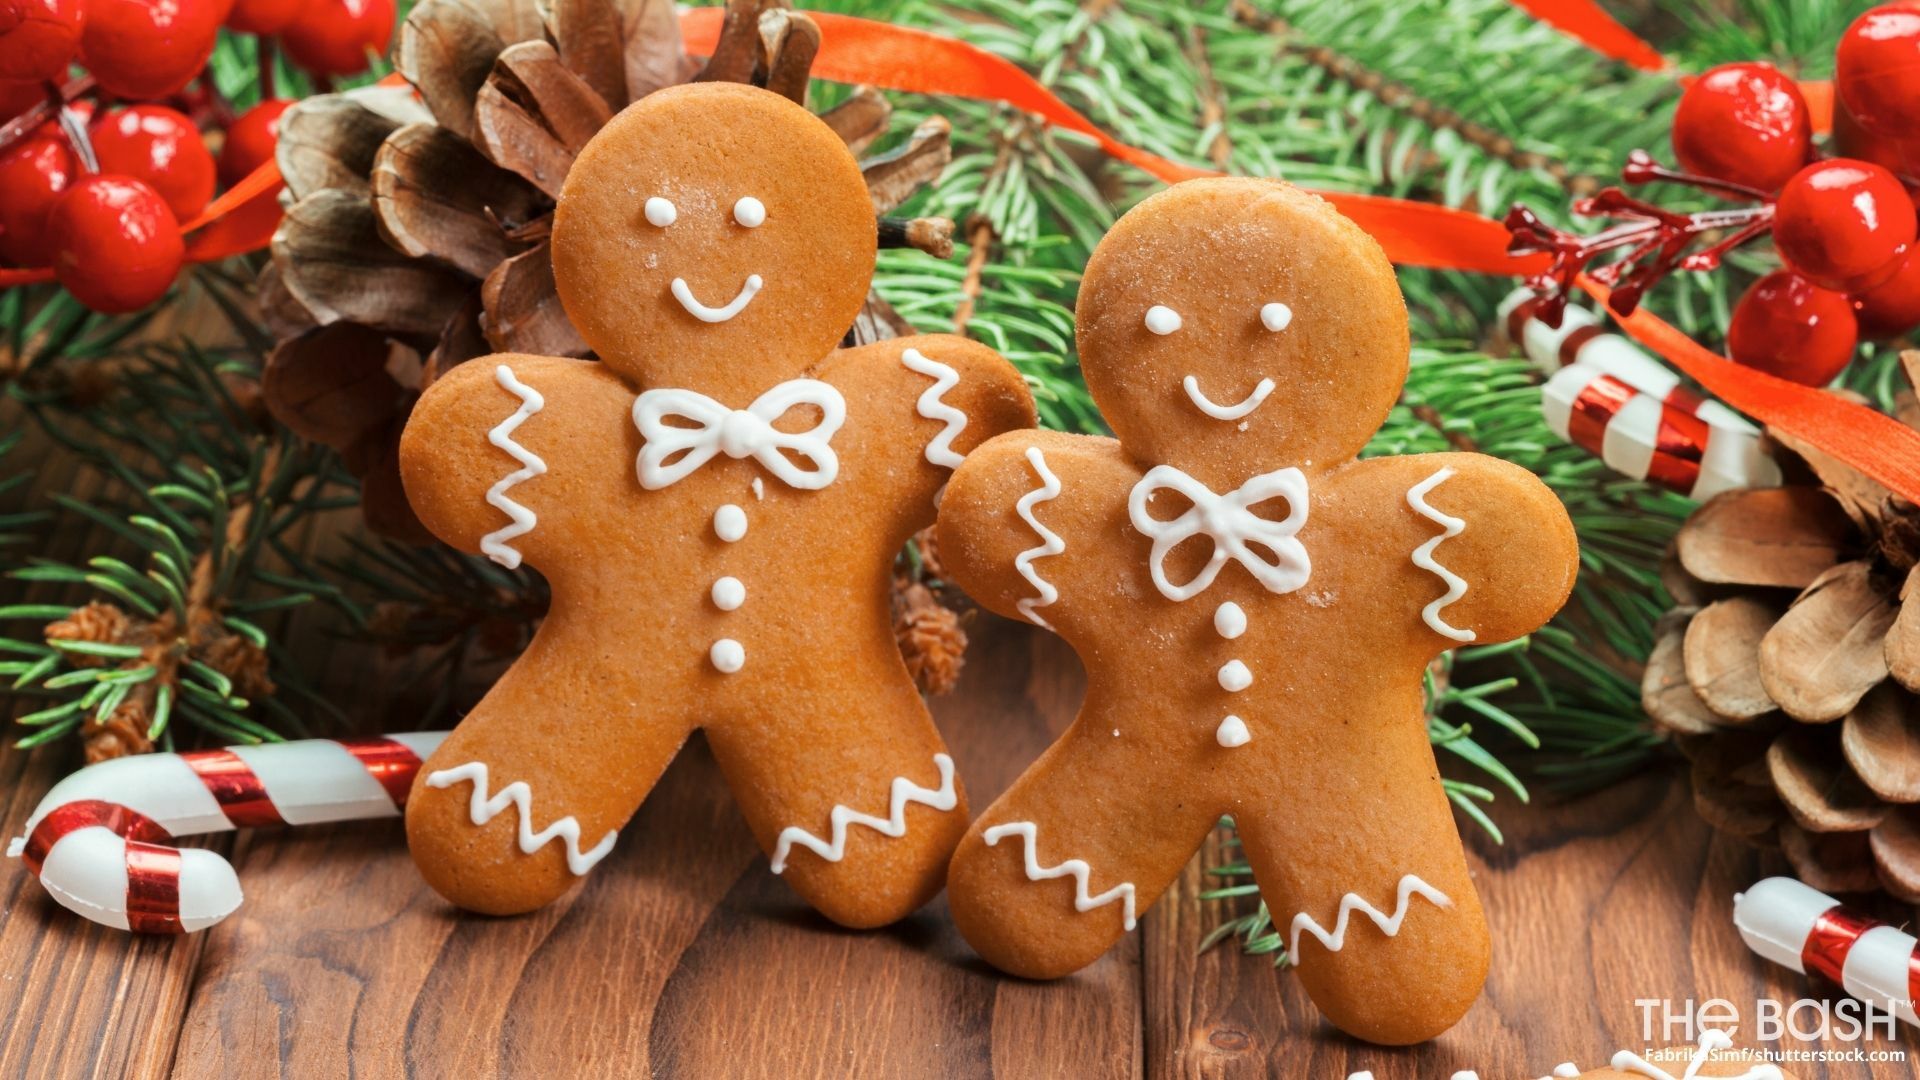 Hãy cùng tham gia vào mùa lễ hội Giáng Sinh năm nay bằng cách làm bánh quy Giáng Sinh thật ngon miệng và đẹp mắt! Cùng xem hình ảnh chi tiết về các loại bánh quy này để cùng thực hiện những chiếc bánh quy thật tuyệt vời cho giáng sinh này nhé!